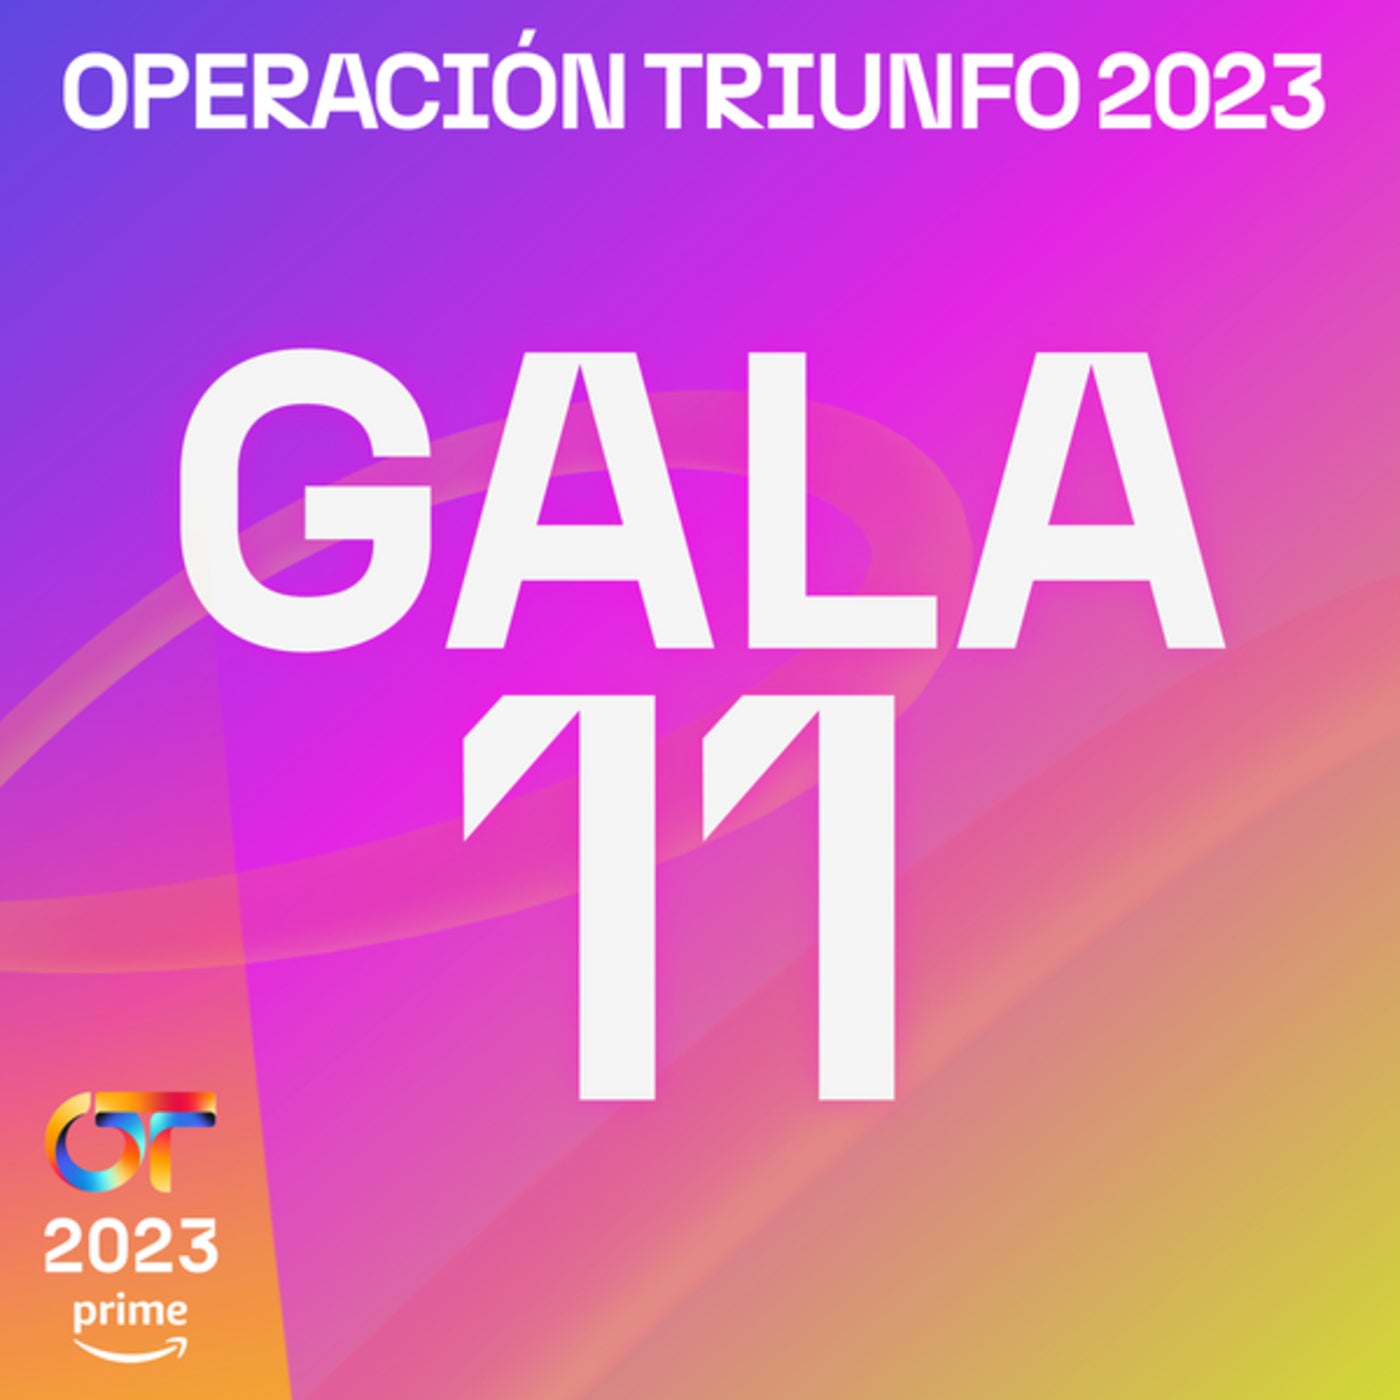 OT Gala 10 (Operación Triunfo 2023) by Operación Triunfo 2023, Lucas  Curotto, Chiara Oliver, Naiara, Martin Urrutia, Paul Thin, Ruslana, Juanjo  Bona and Bea Fernández on Beatsource